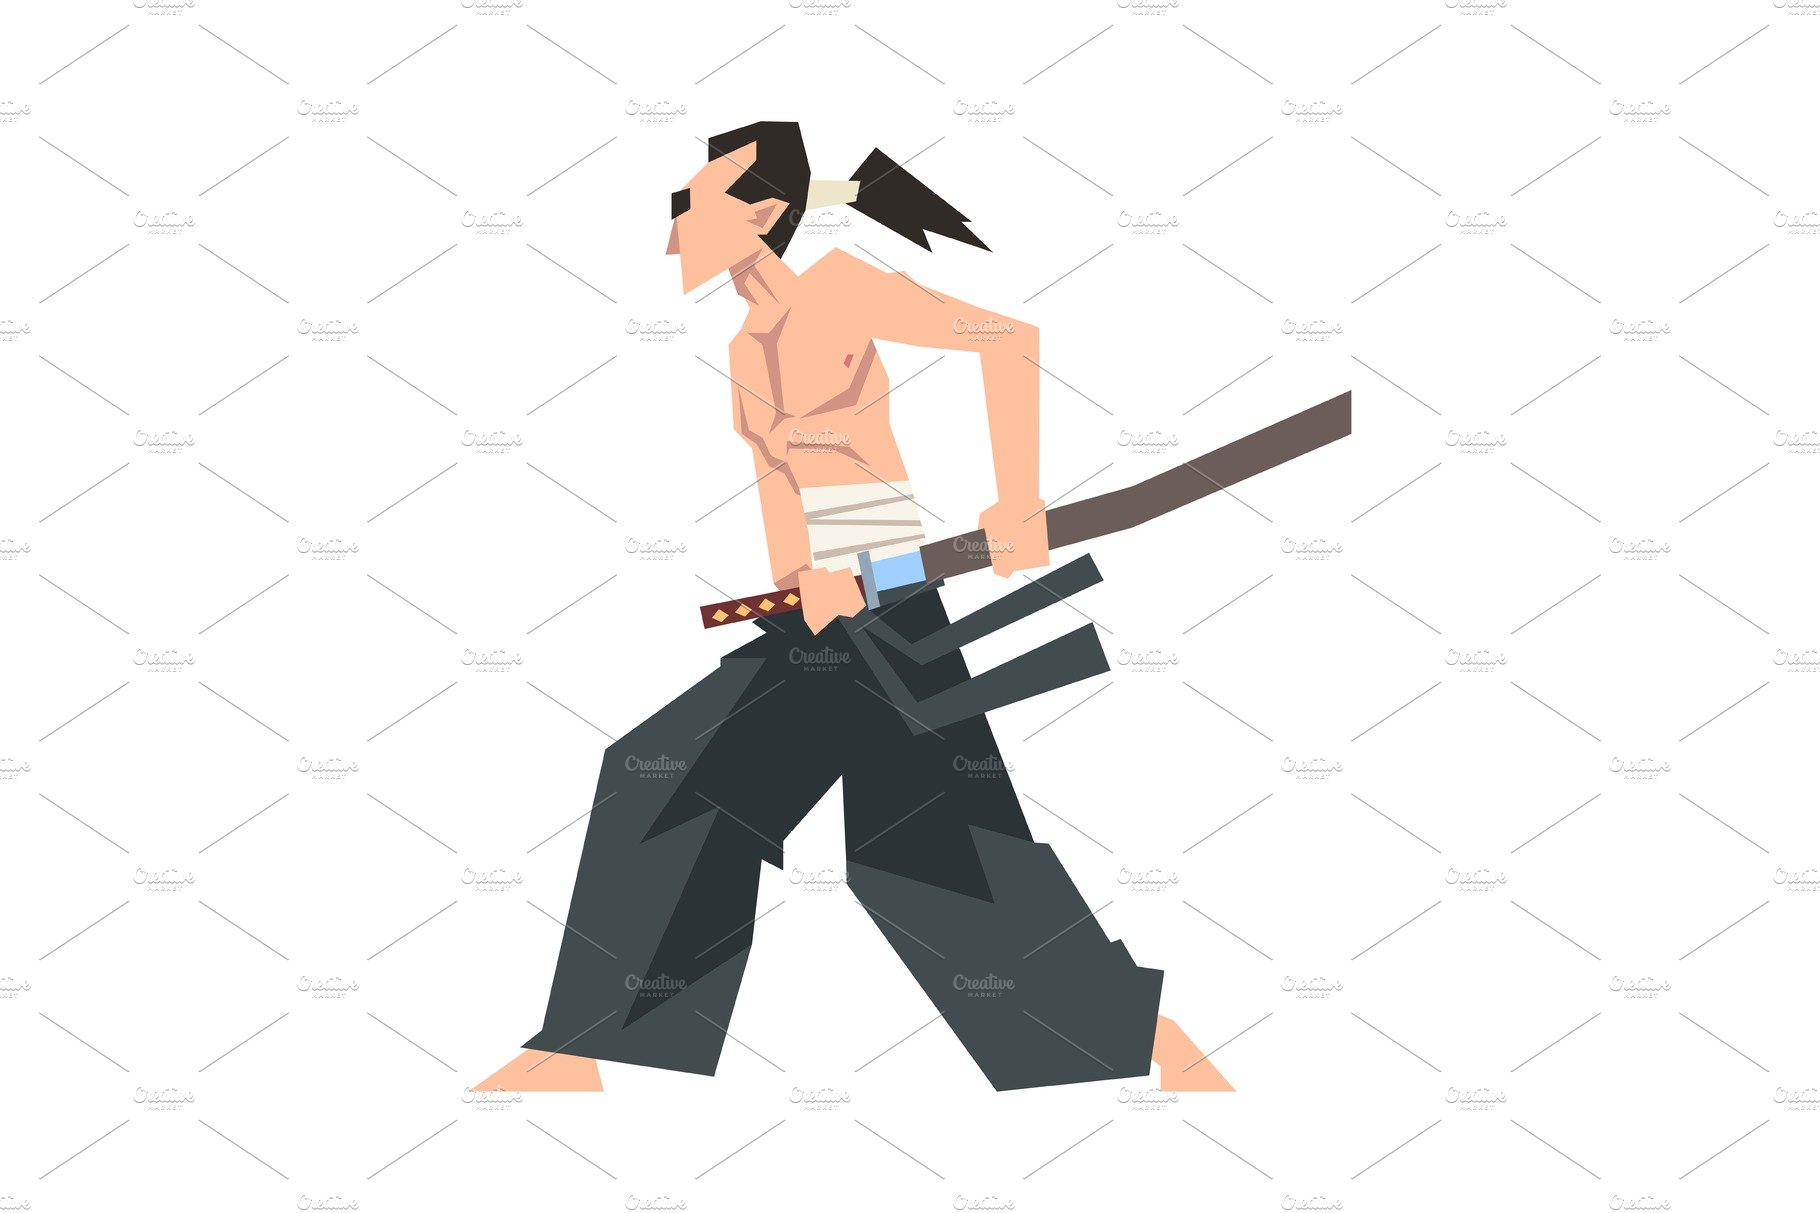 Samurai Character Wearing Hakama cover image.